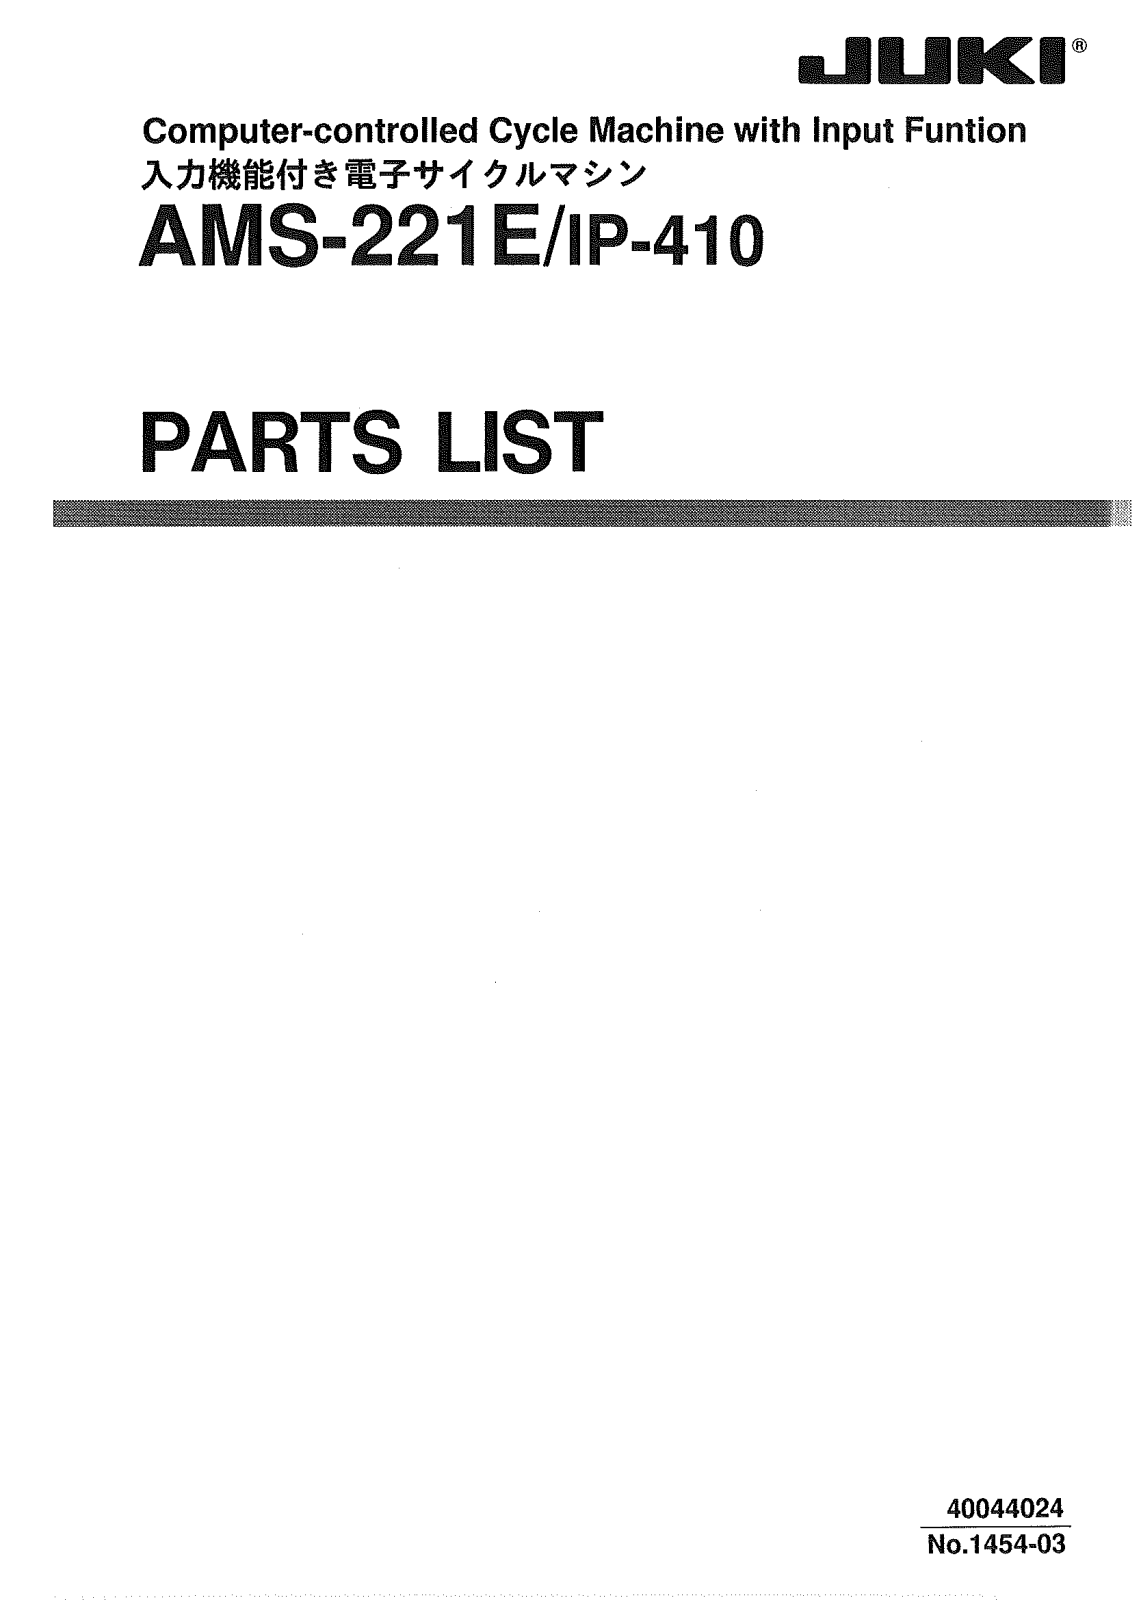 Juki AMS-221E Parts List